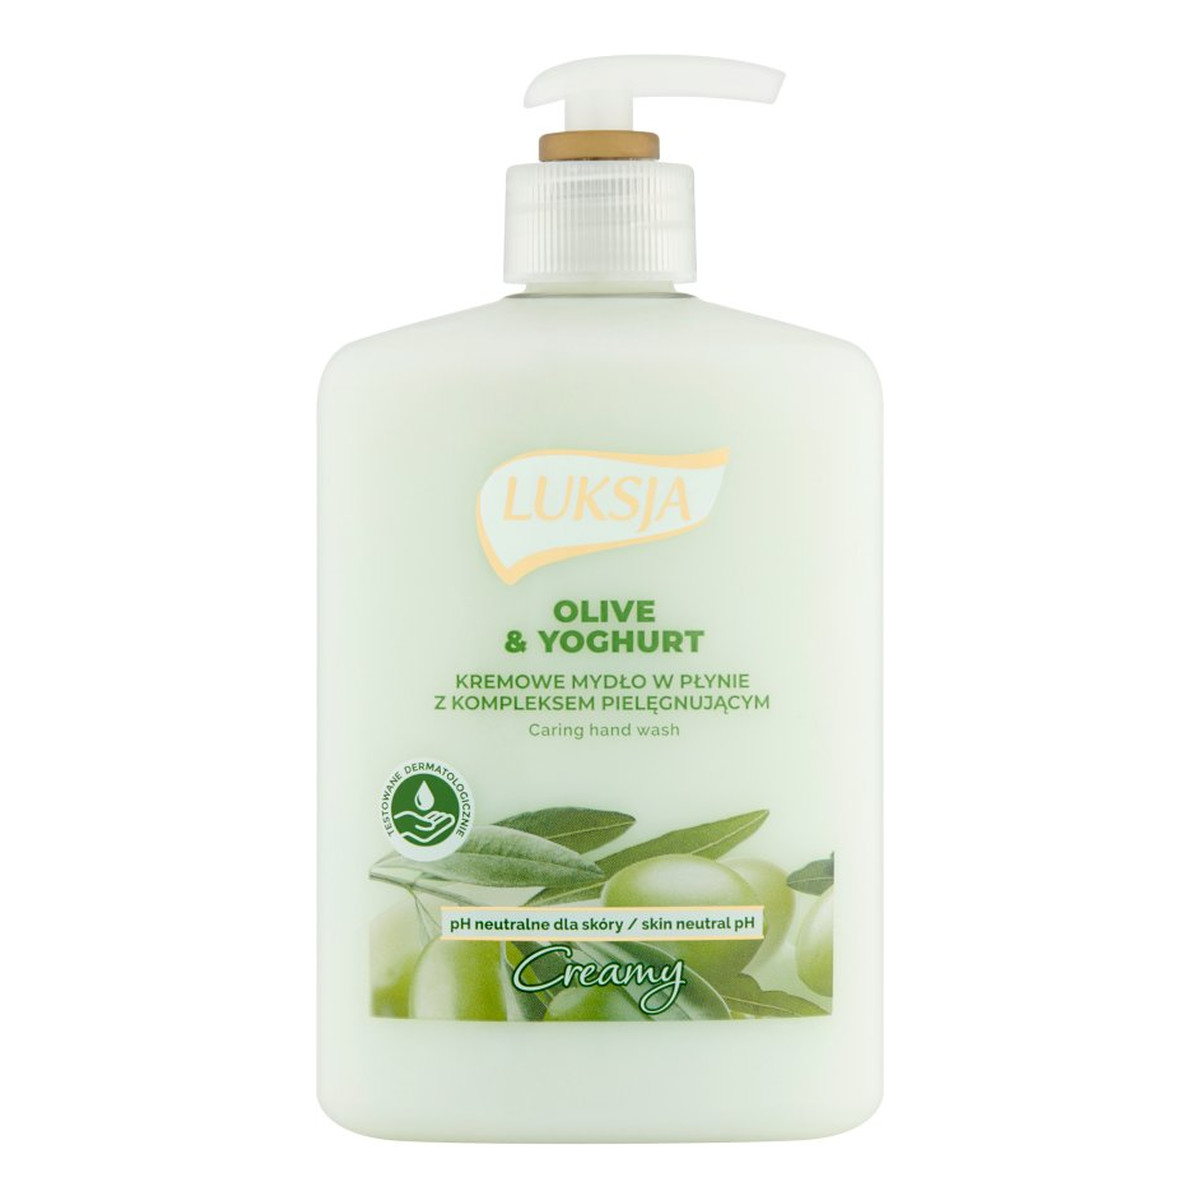 Luksja Creamy Kremowe mydło w płynie Olive & Yoghurt 500ml